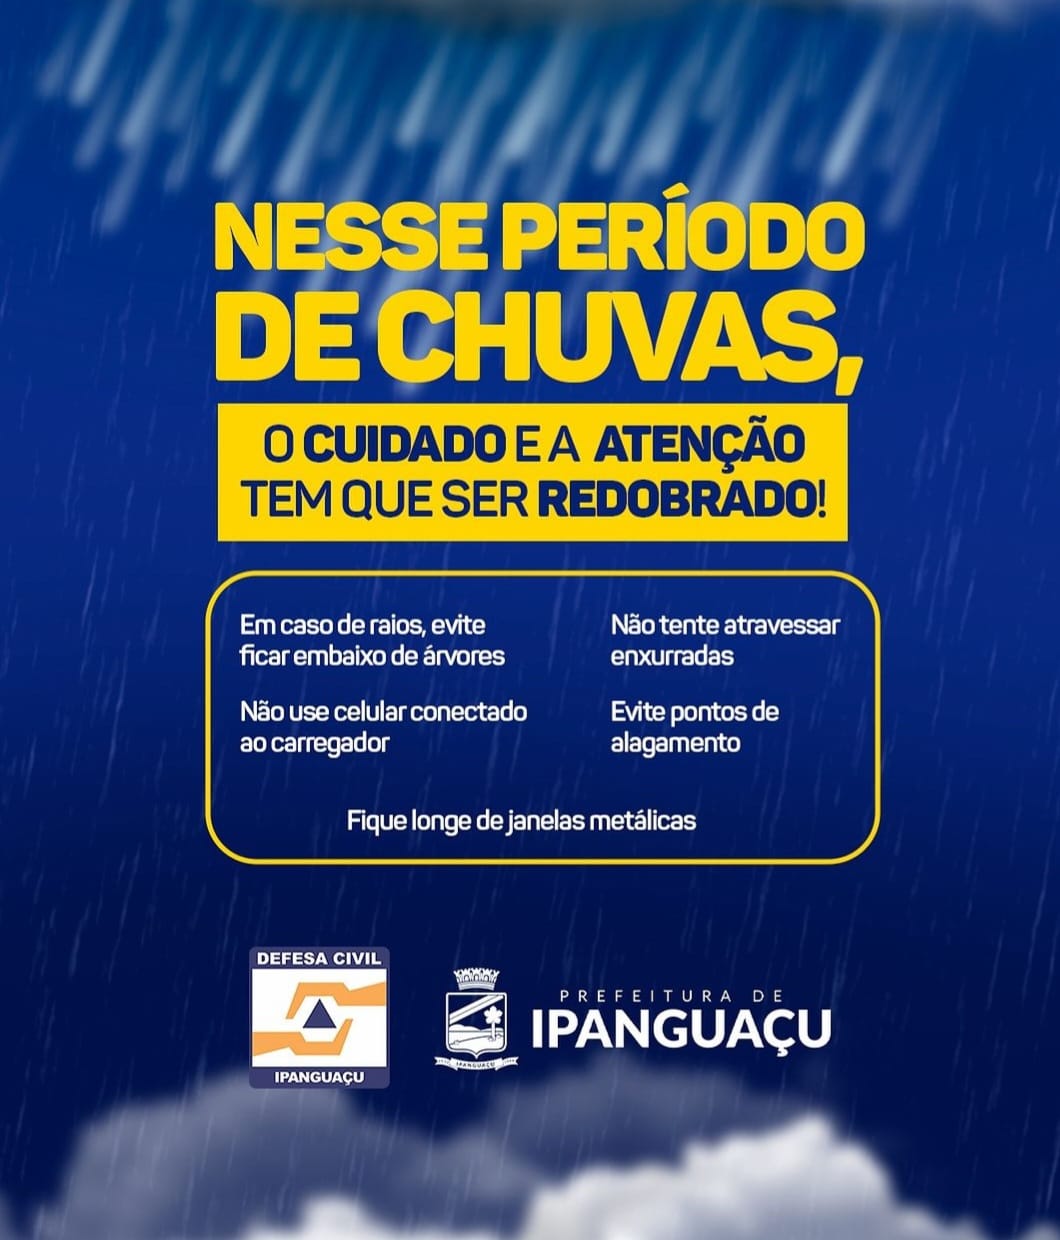 Prefeitura de Ipanguaçu oferece dicas de segurança durante esse período de chuvas